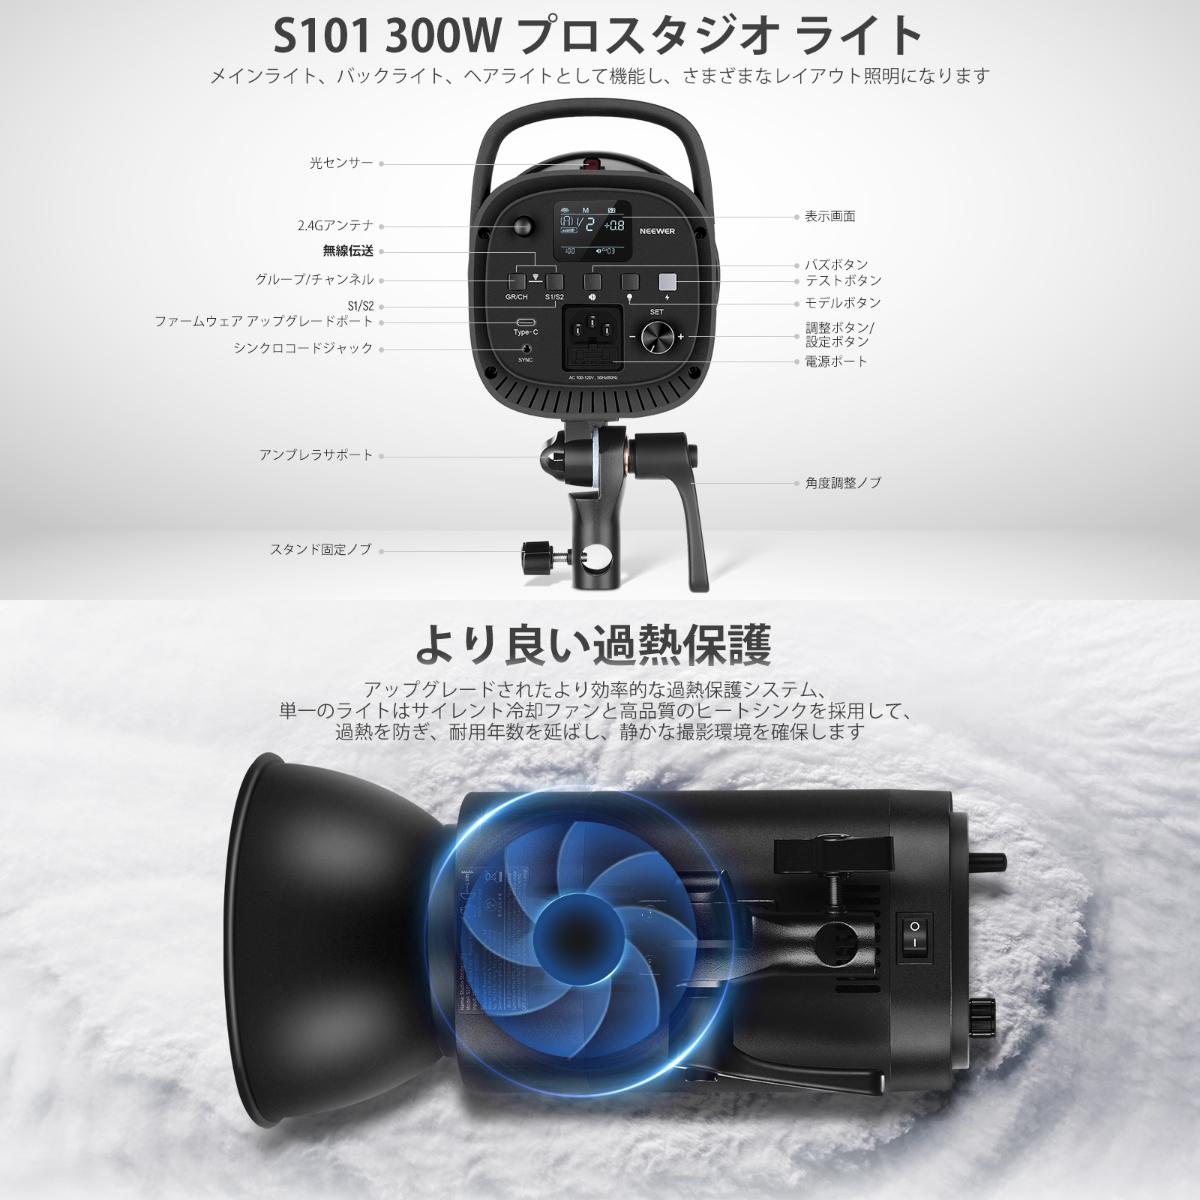 NEEWER JAPAN 公式サイト|プロ写真・撮影機材専門店. NEEWER S101-300W